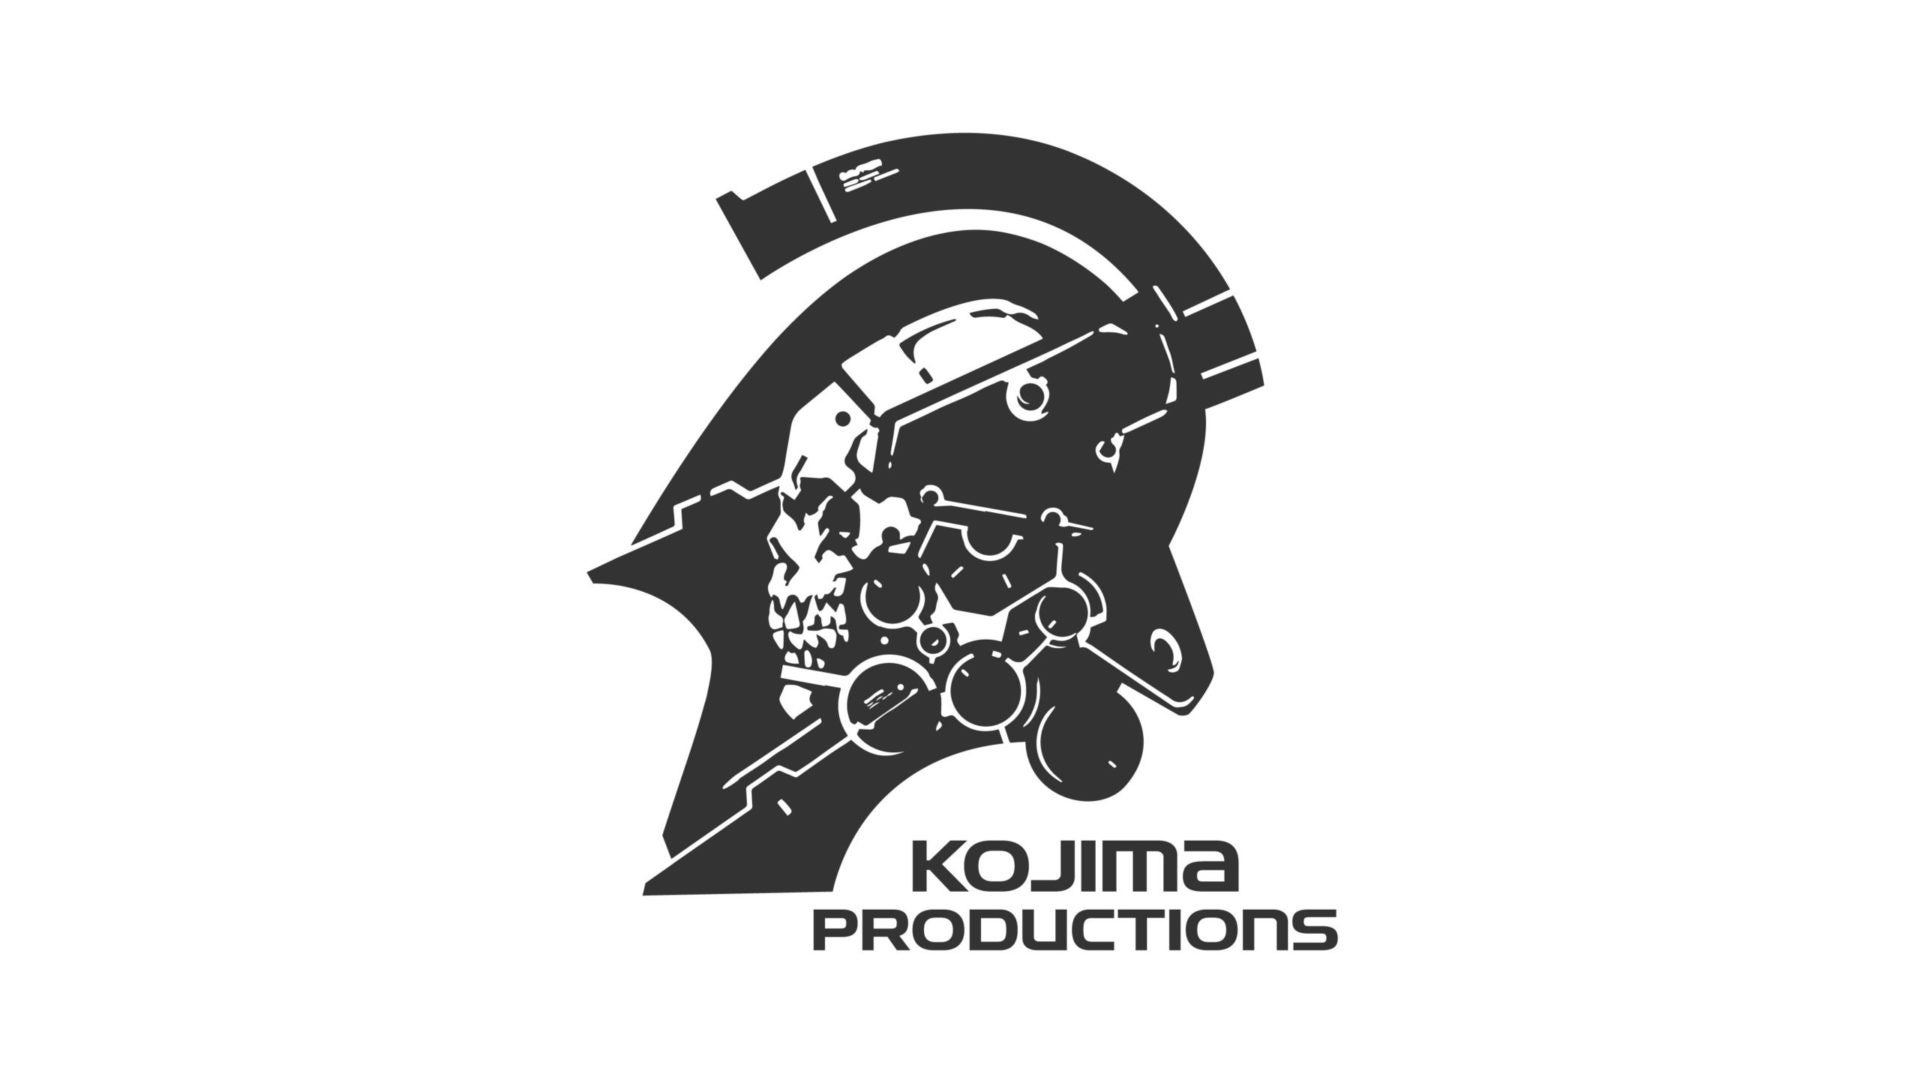 Kojima Productions ameaça ação legal após Hideo Kojima ter ligado erroneamente ao assassinato de Shinzo Abe